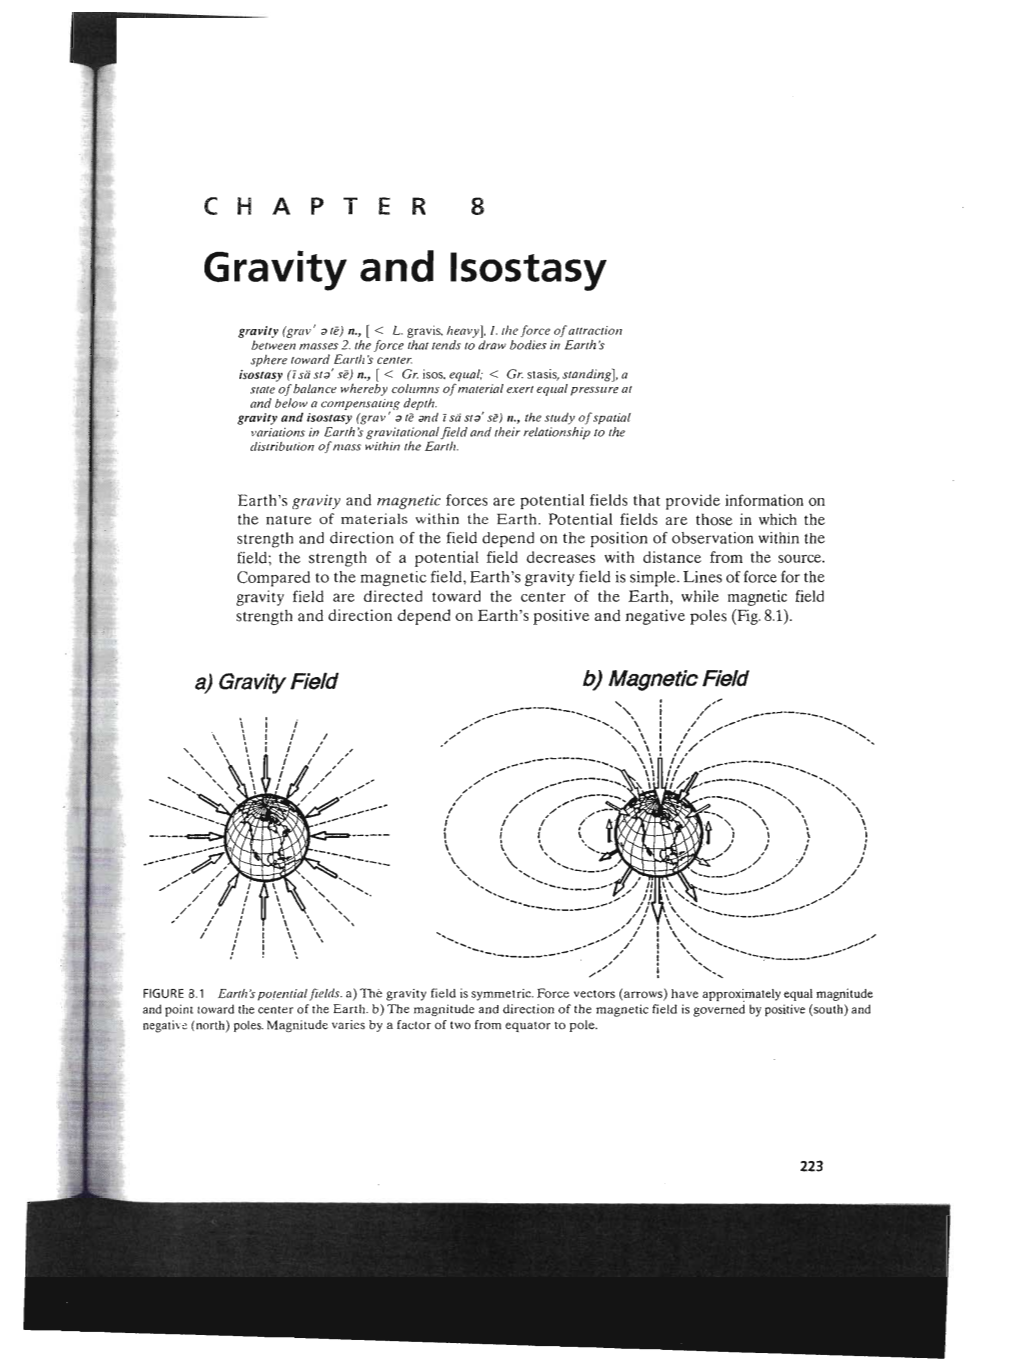 Gravity and Isostasy